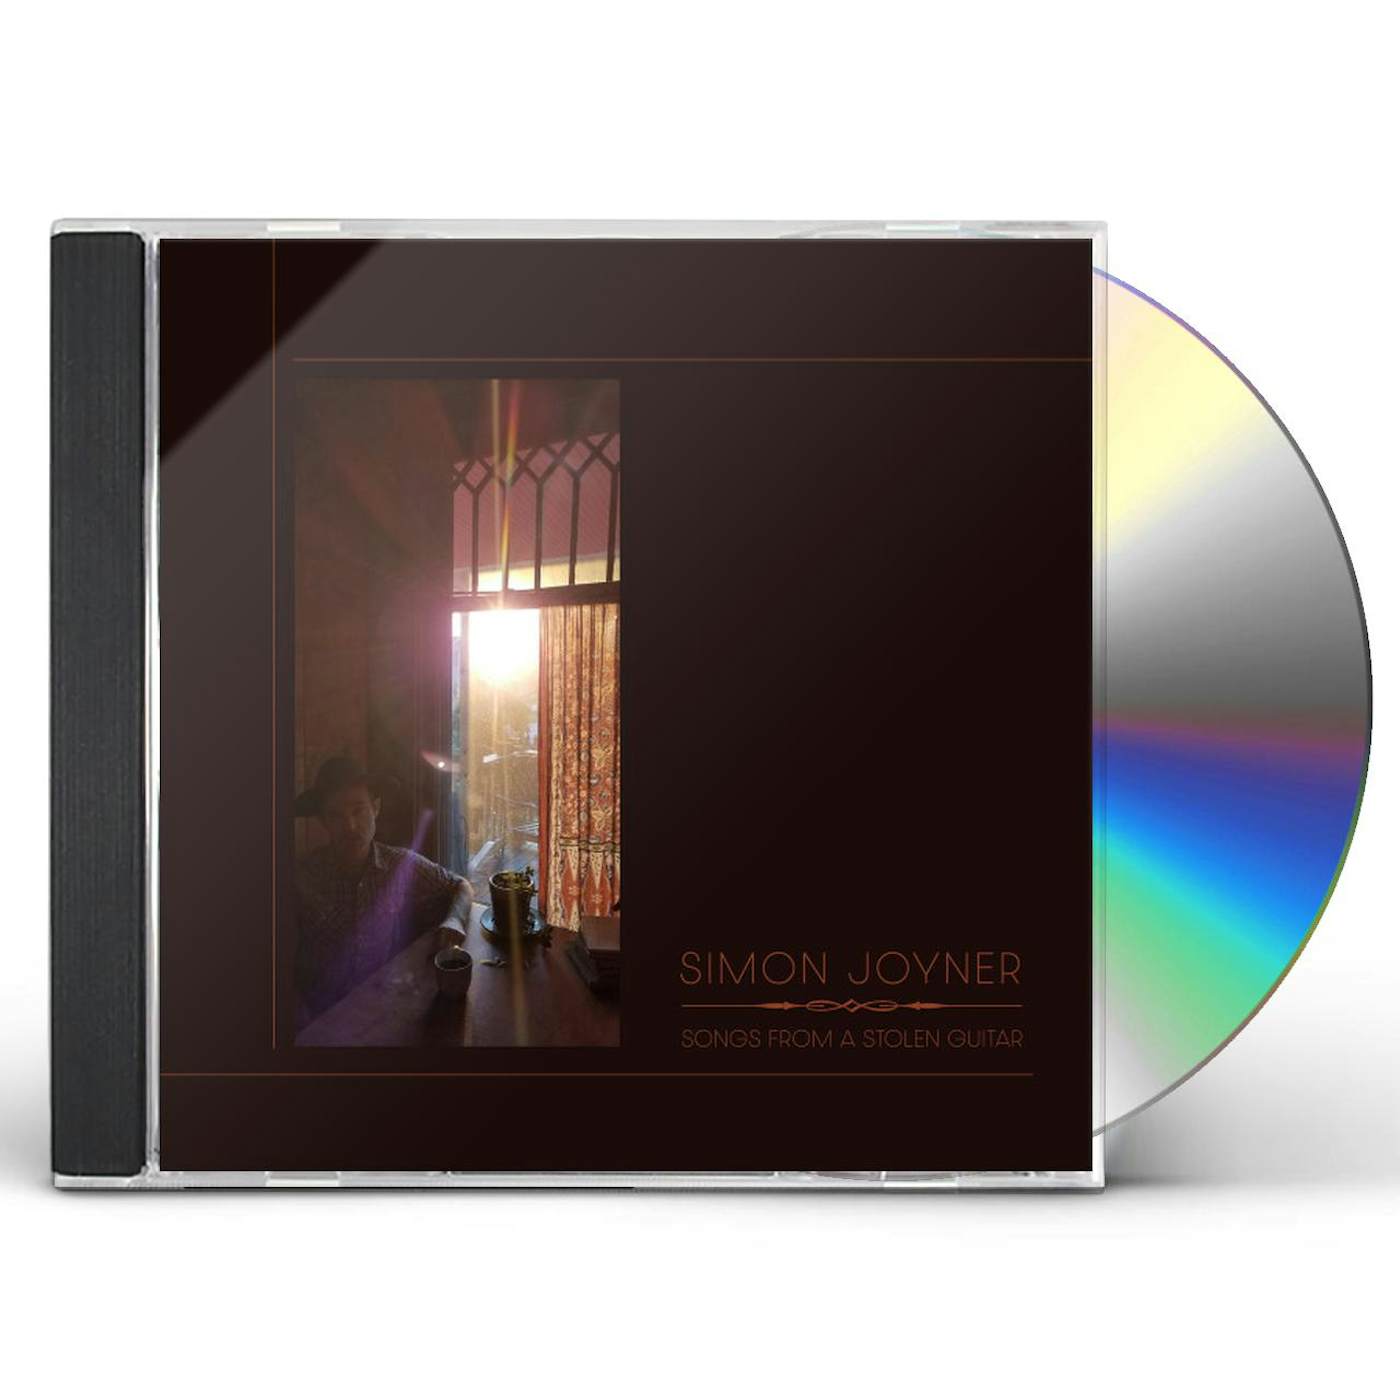 Simon Joyner SONGS FROM A STOLEN CD